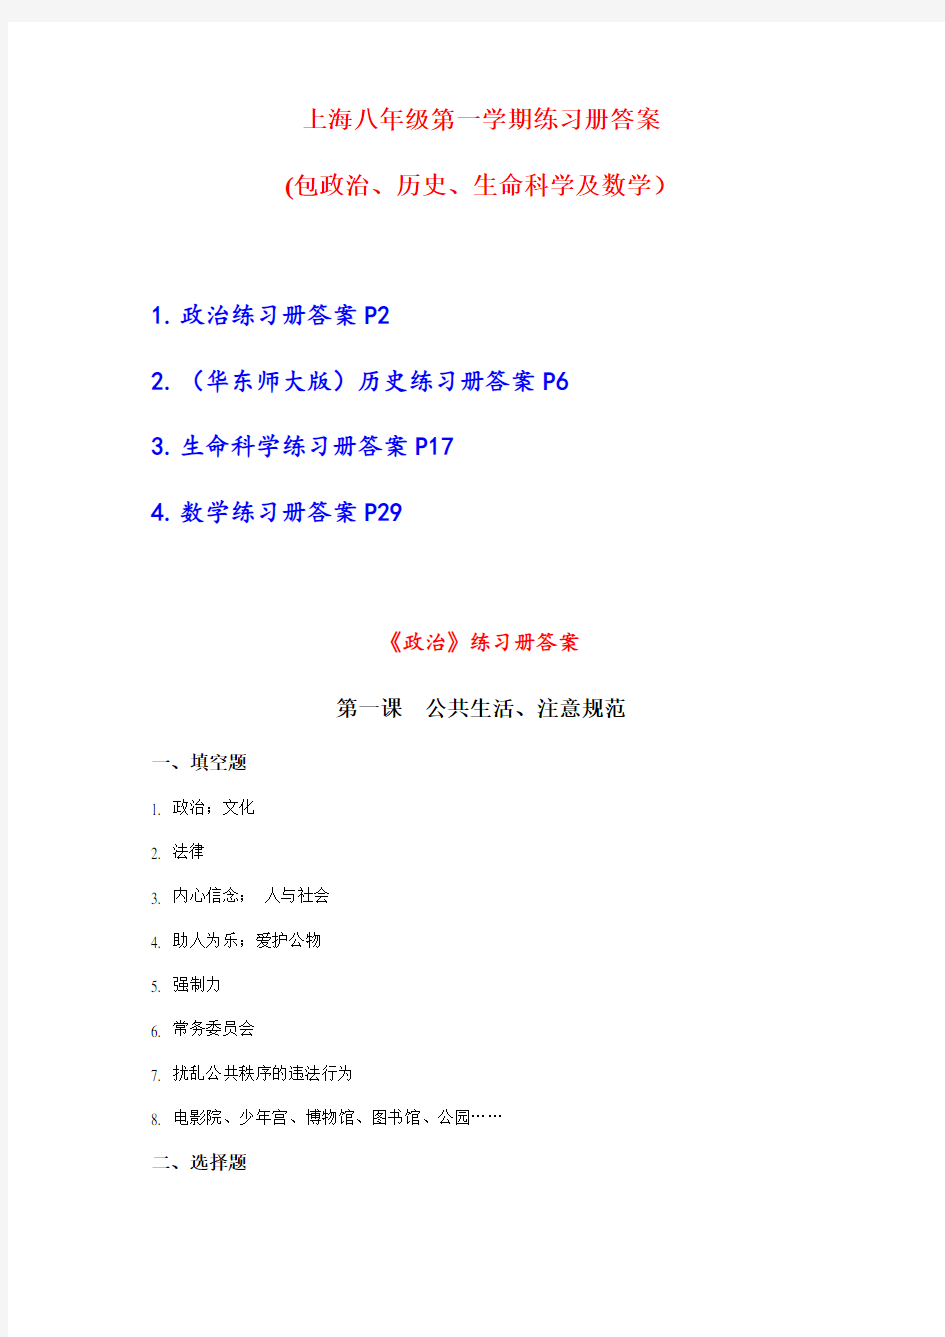 上海八年级第一学期全套练习册答案(包括政治历史生命数学) 